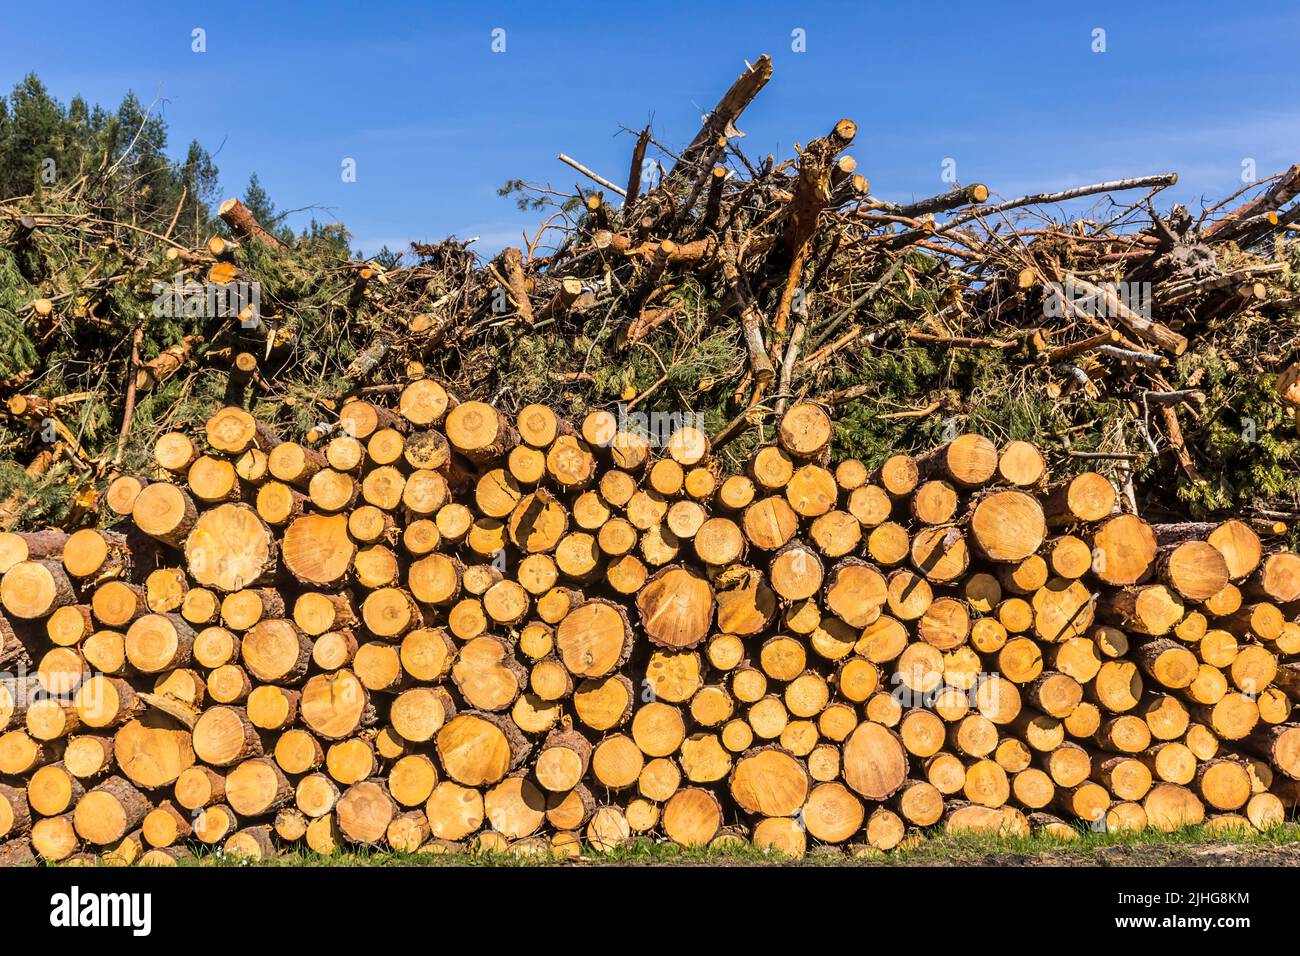 Extrémités rondes jaunes de bûches empilées contre le ciel. Site sur l'industrie du bois , bûcheron , abattage , écologie , forêt , arbre . Banque D'Images